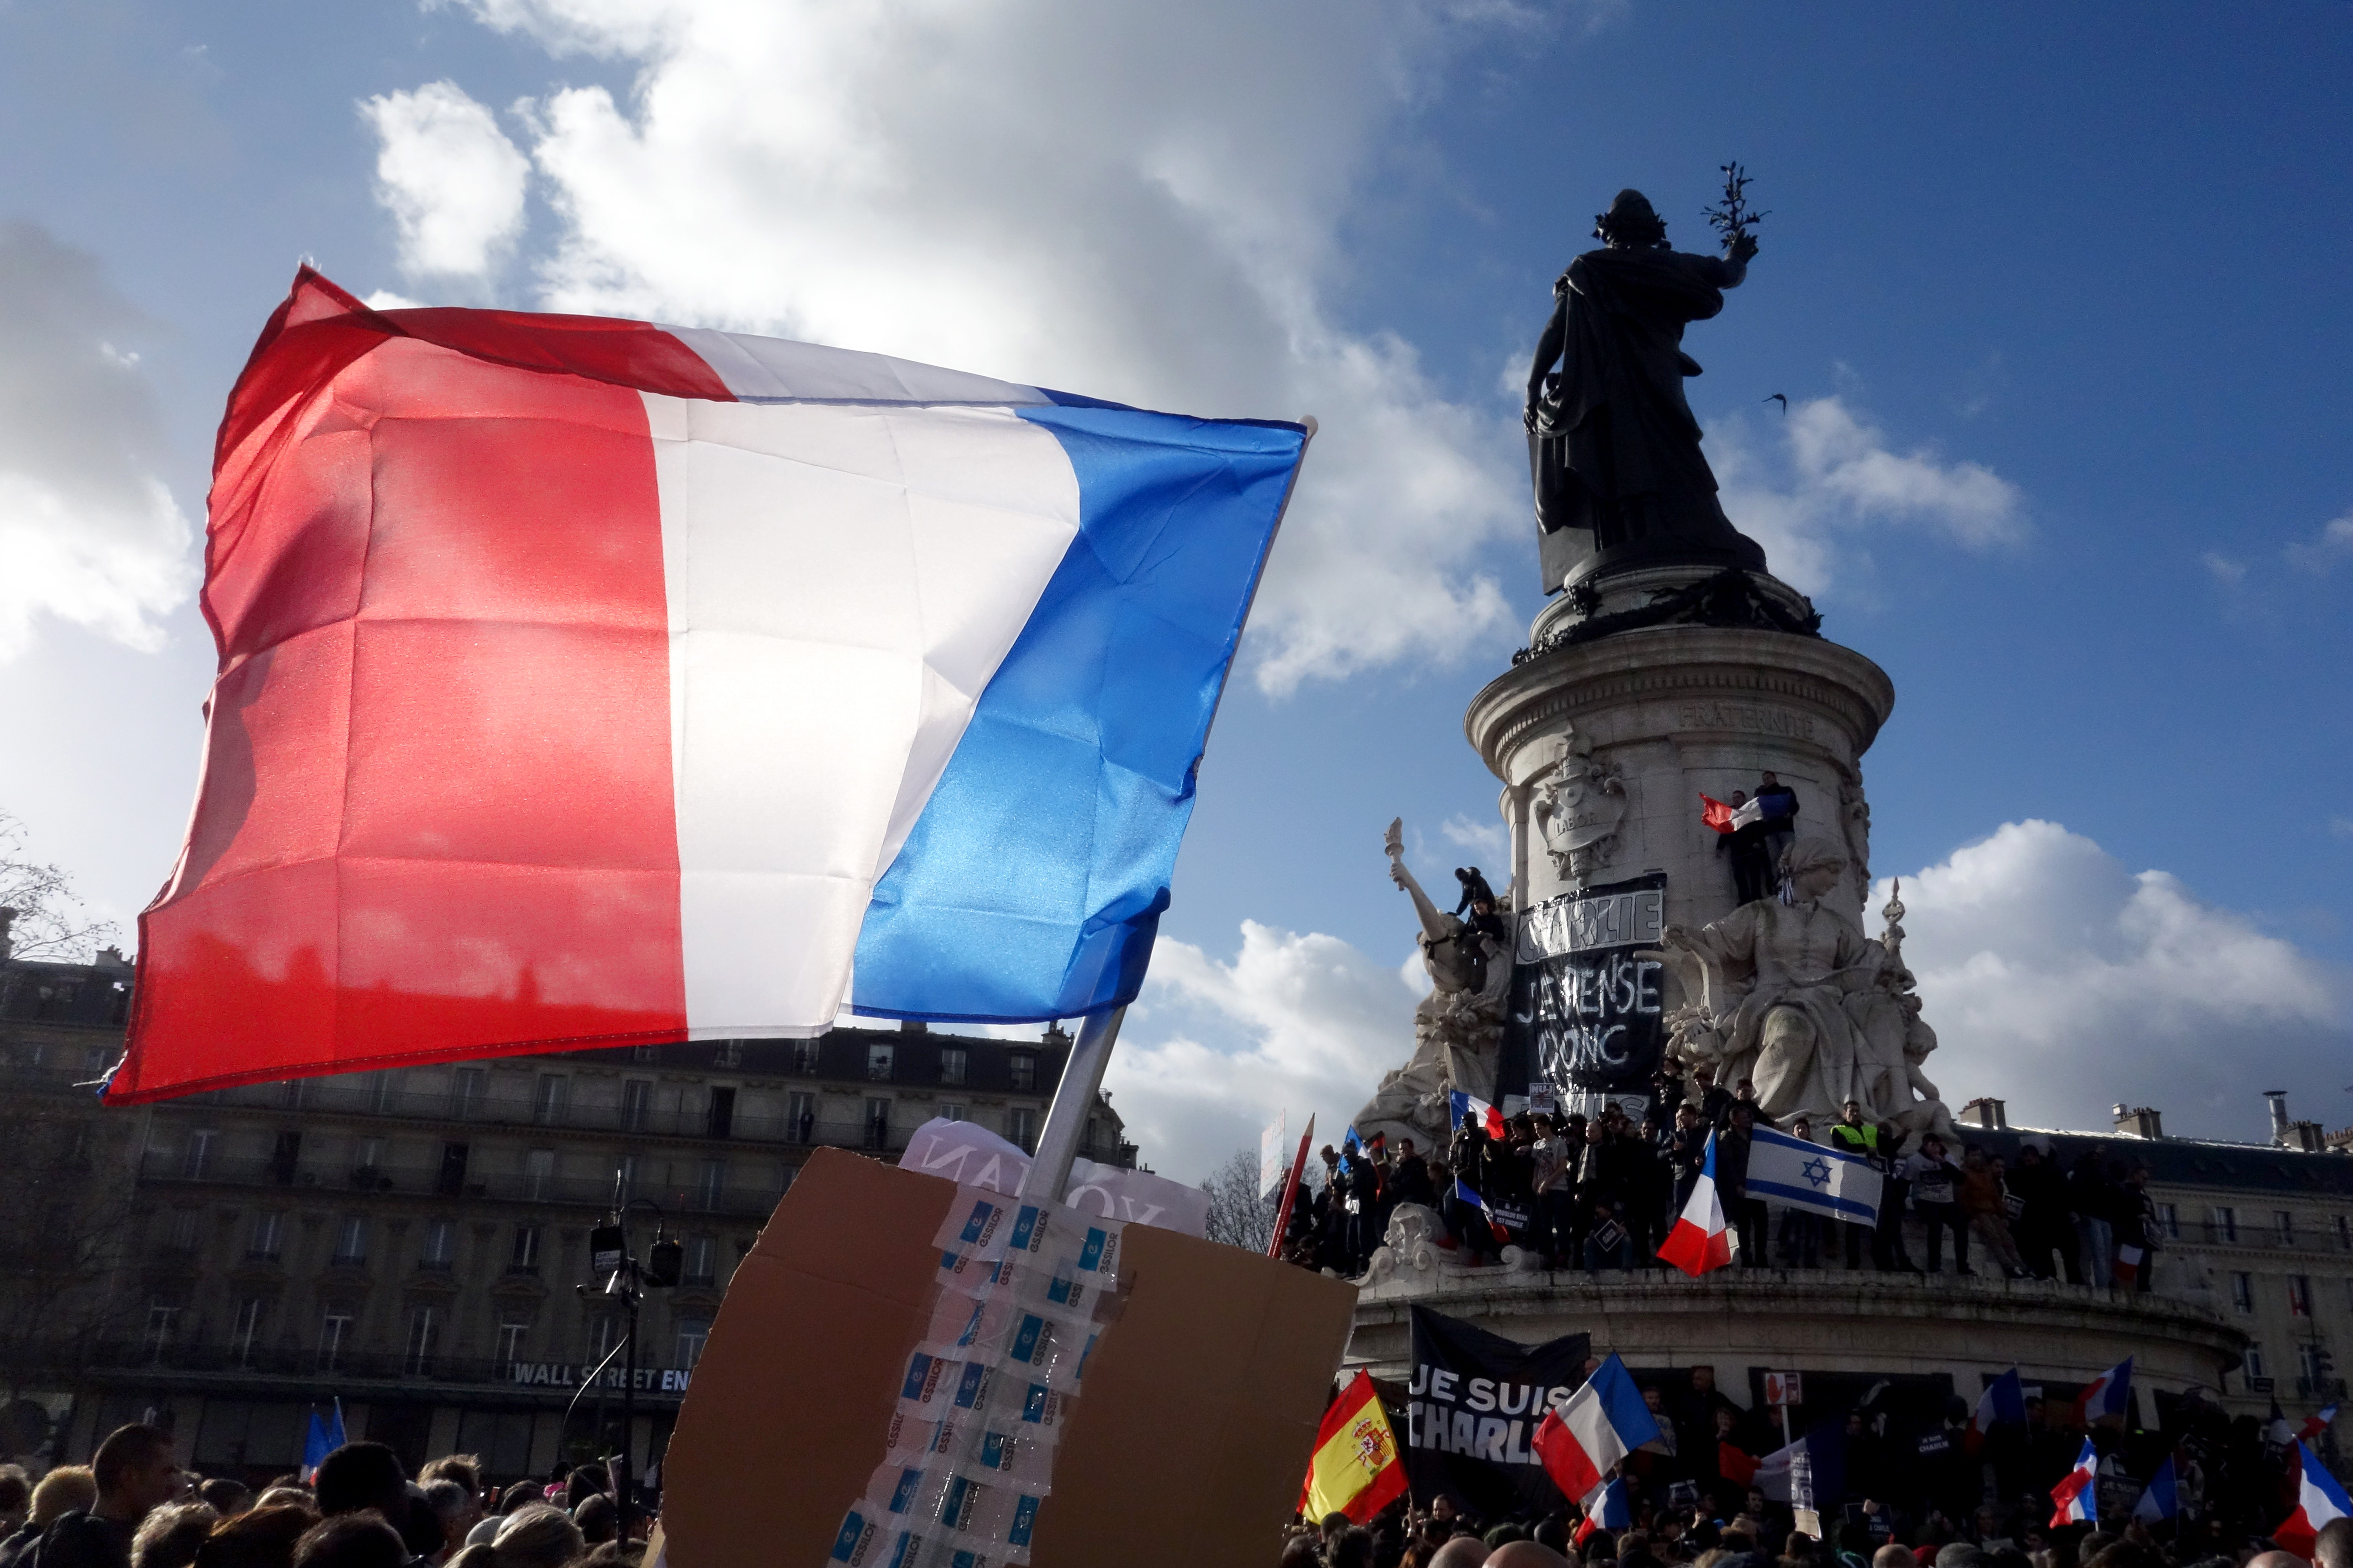 Place de la République after the Paris Attacks of January 2015, “Je Suis Charlie” Picture by Olivier Ortelpa, Paris